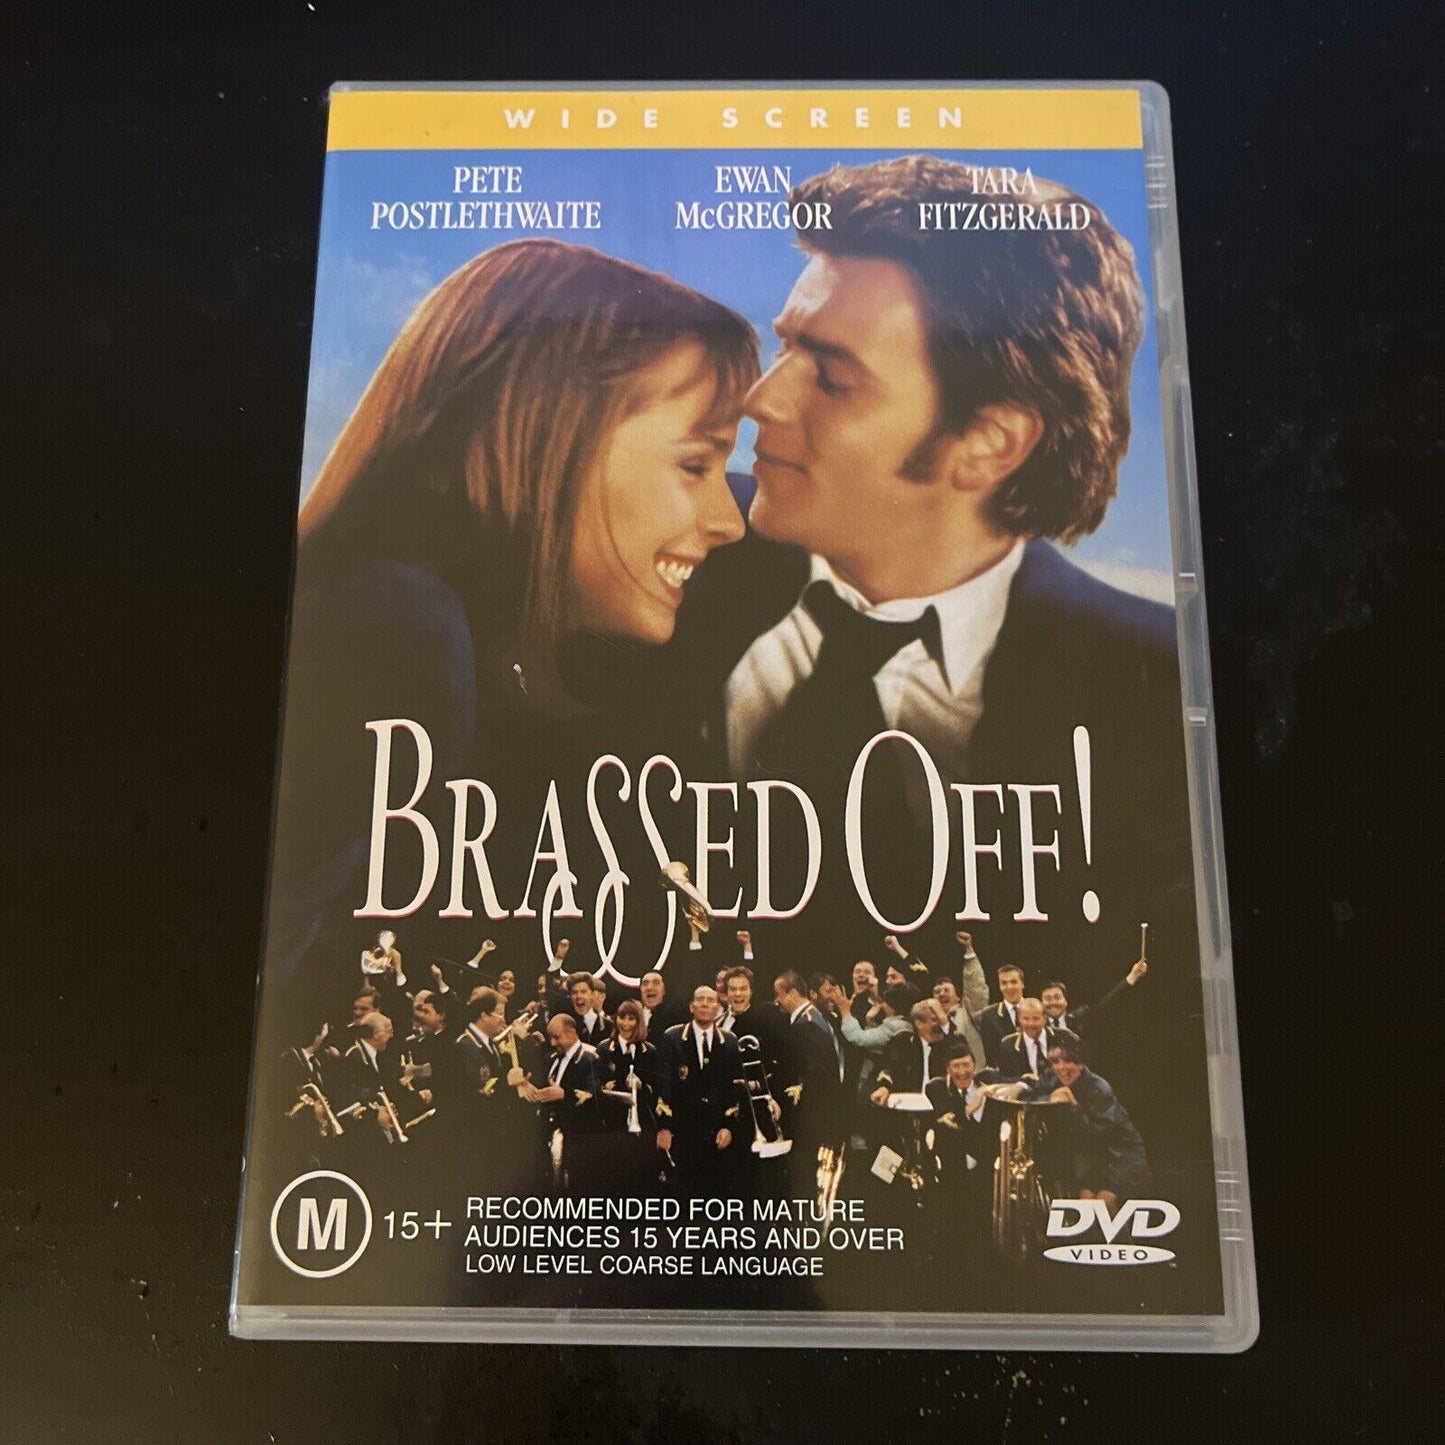 Brassed Off! (DVD, 1997) Pete Postlethwaite, Ewan McGregor Region 4